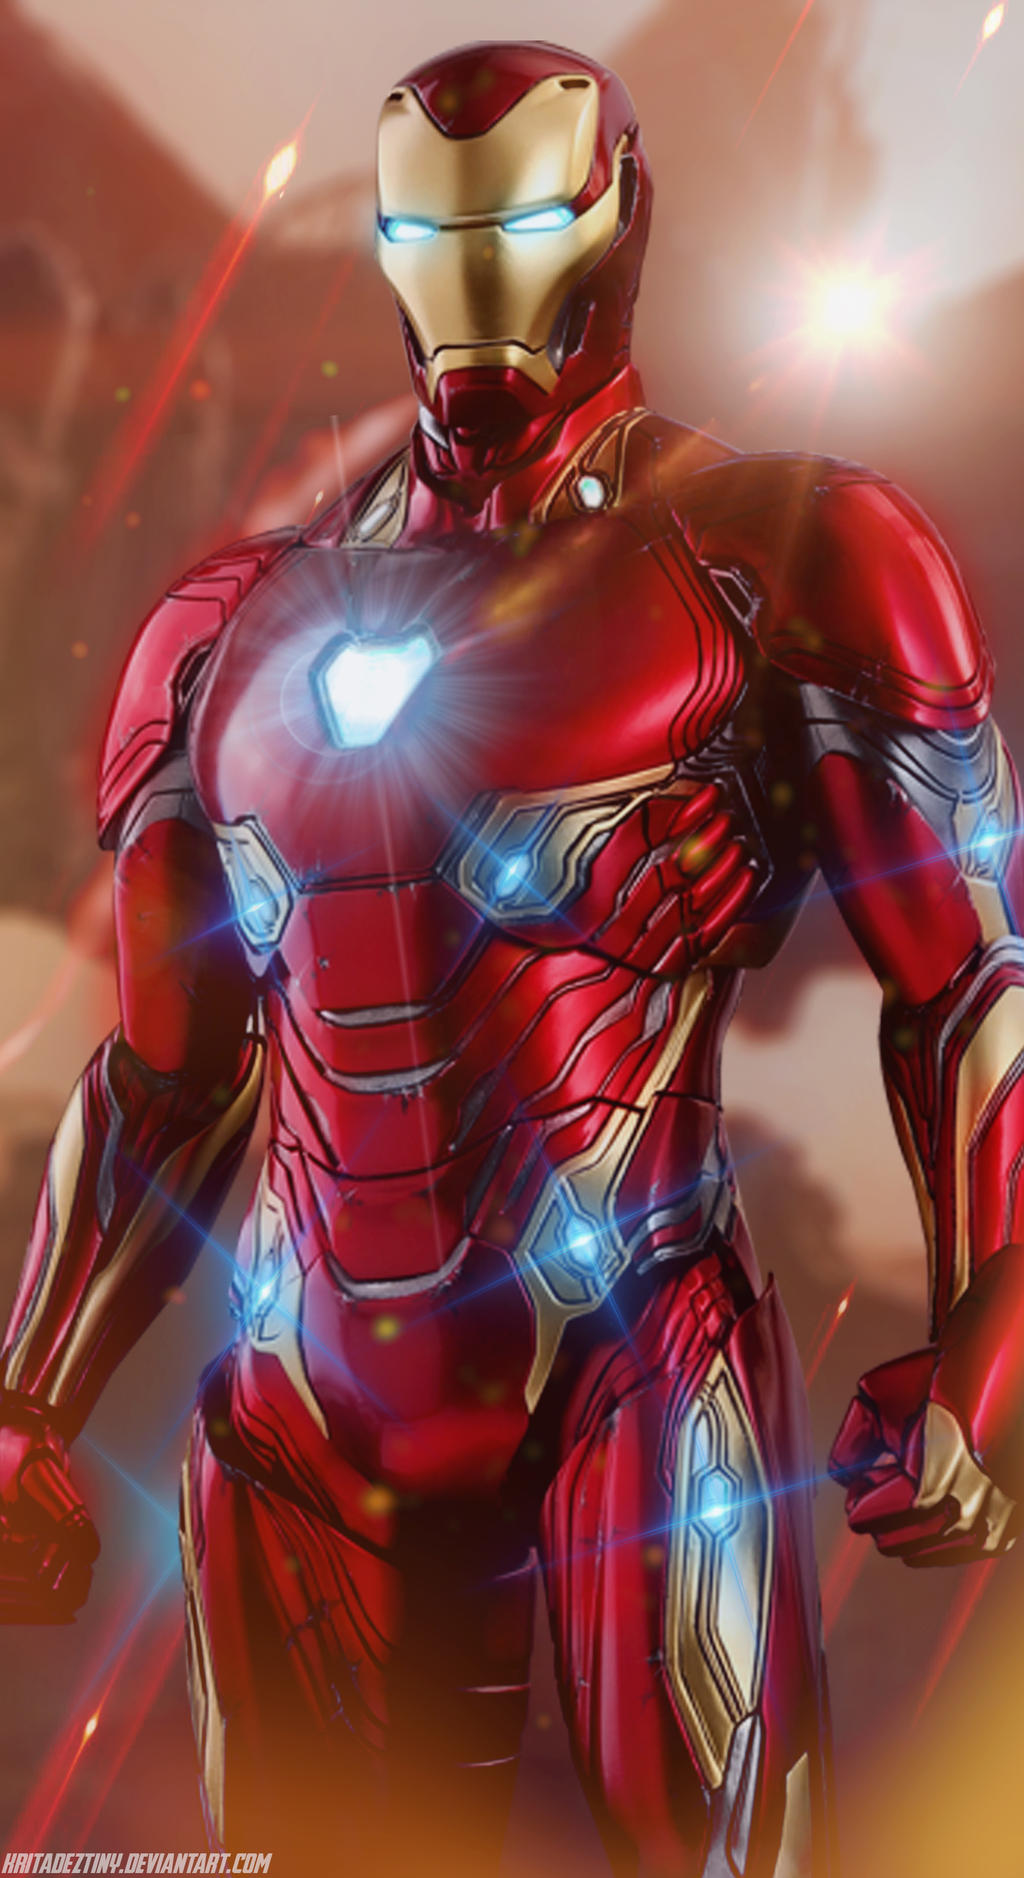 Khóa màn hình Iron Man Mark 50 mang đến một cách thức mới lạ để bảo vệ màn hình điện thoại của bạn. Chiếc khóa với chủ đề Iron Man Mark 50 sẽ khiến người dùng cảm thấy hào hứng và nổi bật so với những chiếc điện thoại khác.